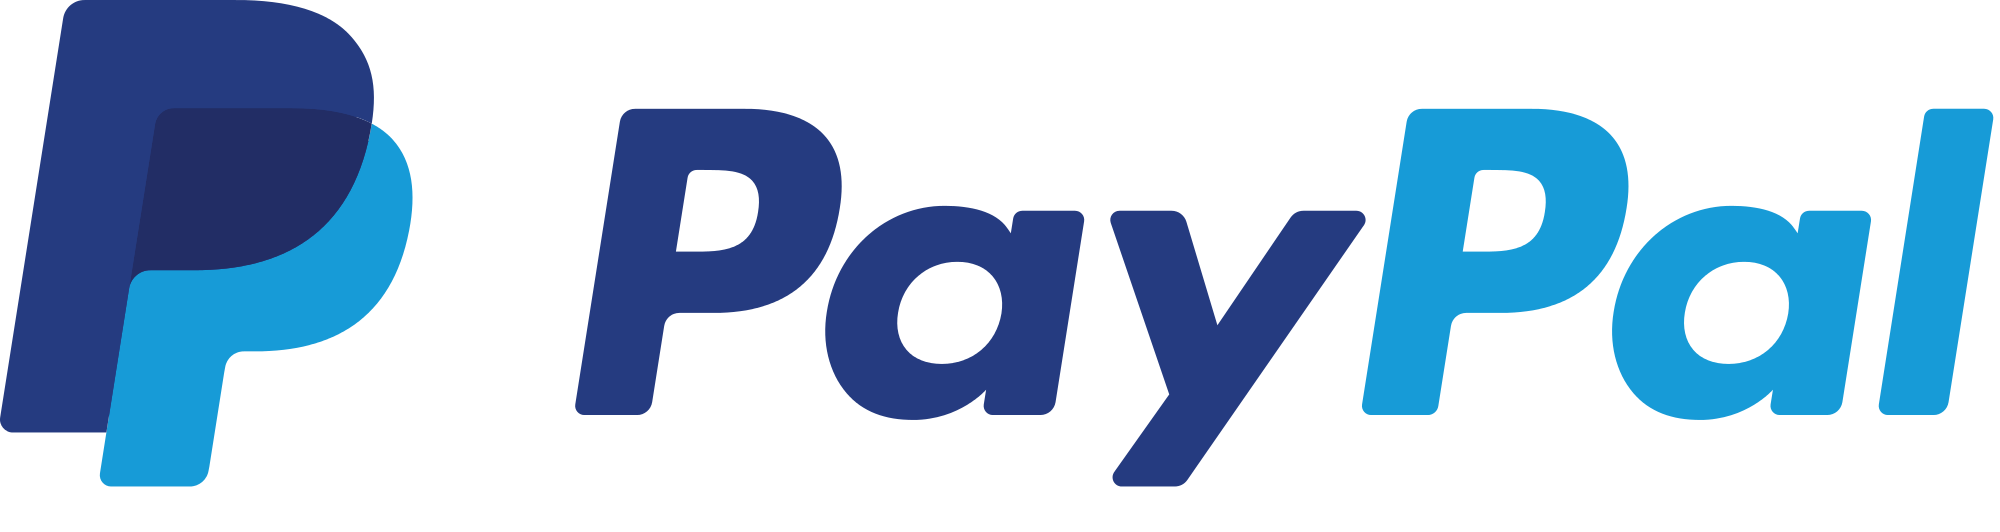 PayPal – Крупнейшая электронная платежная система, основанная в 1998 году.